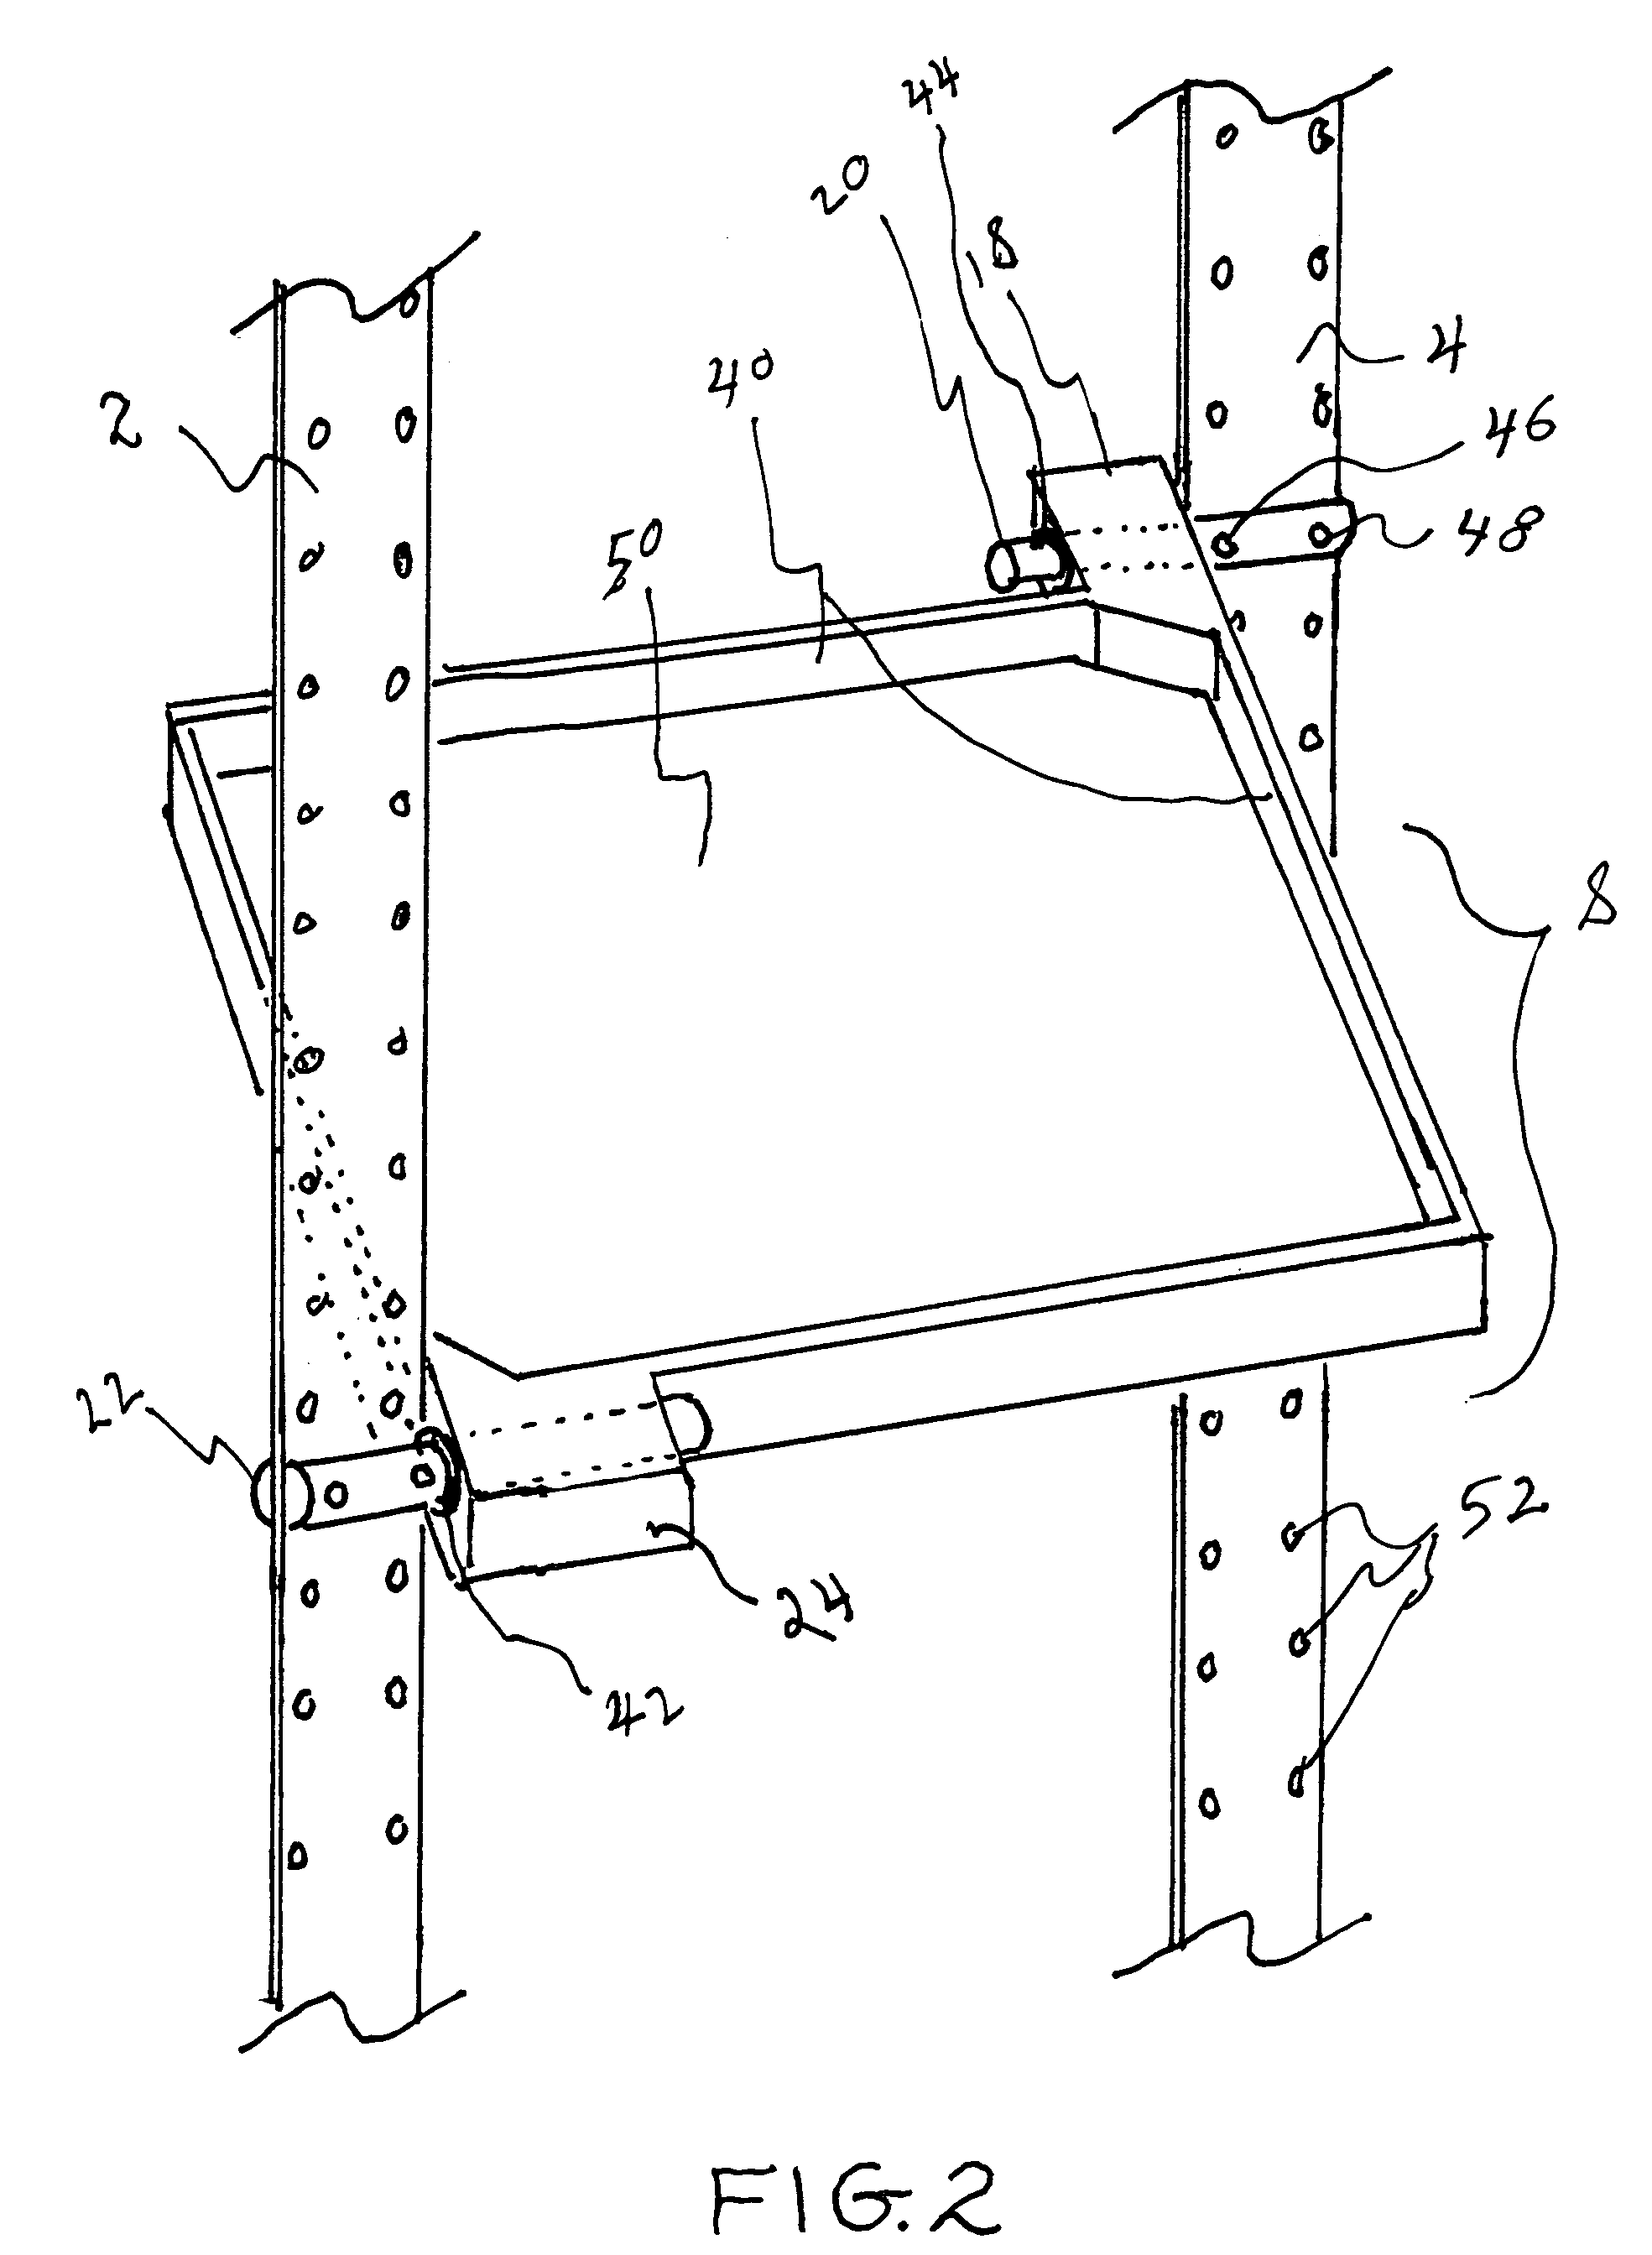 Multi-directional conveyor